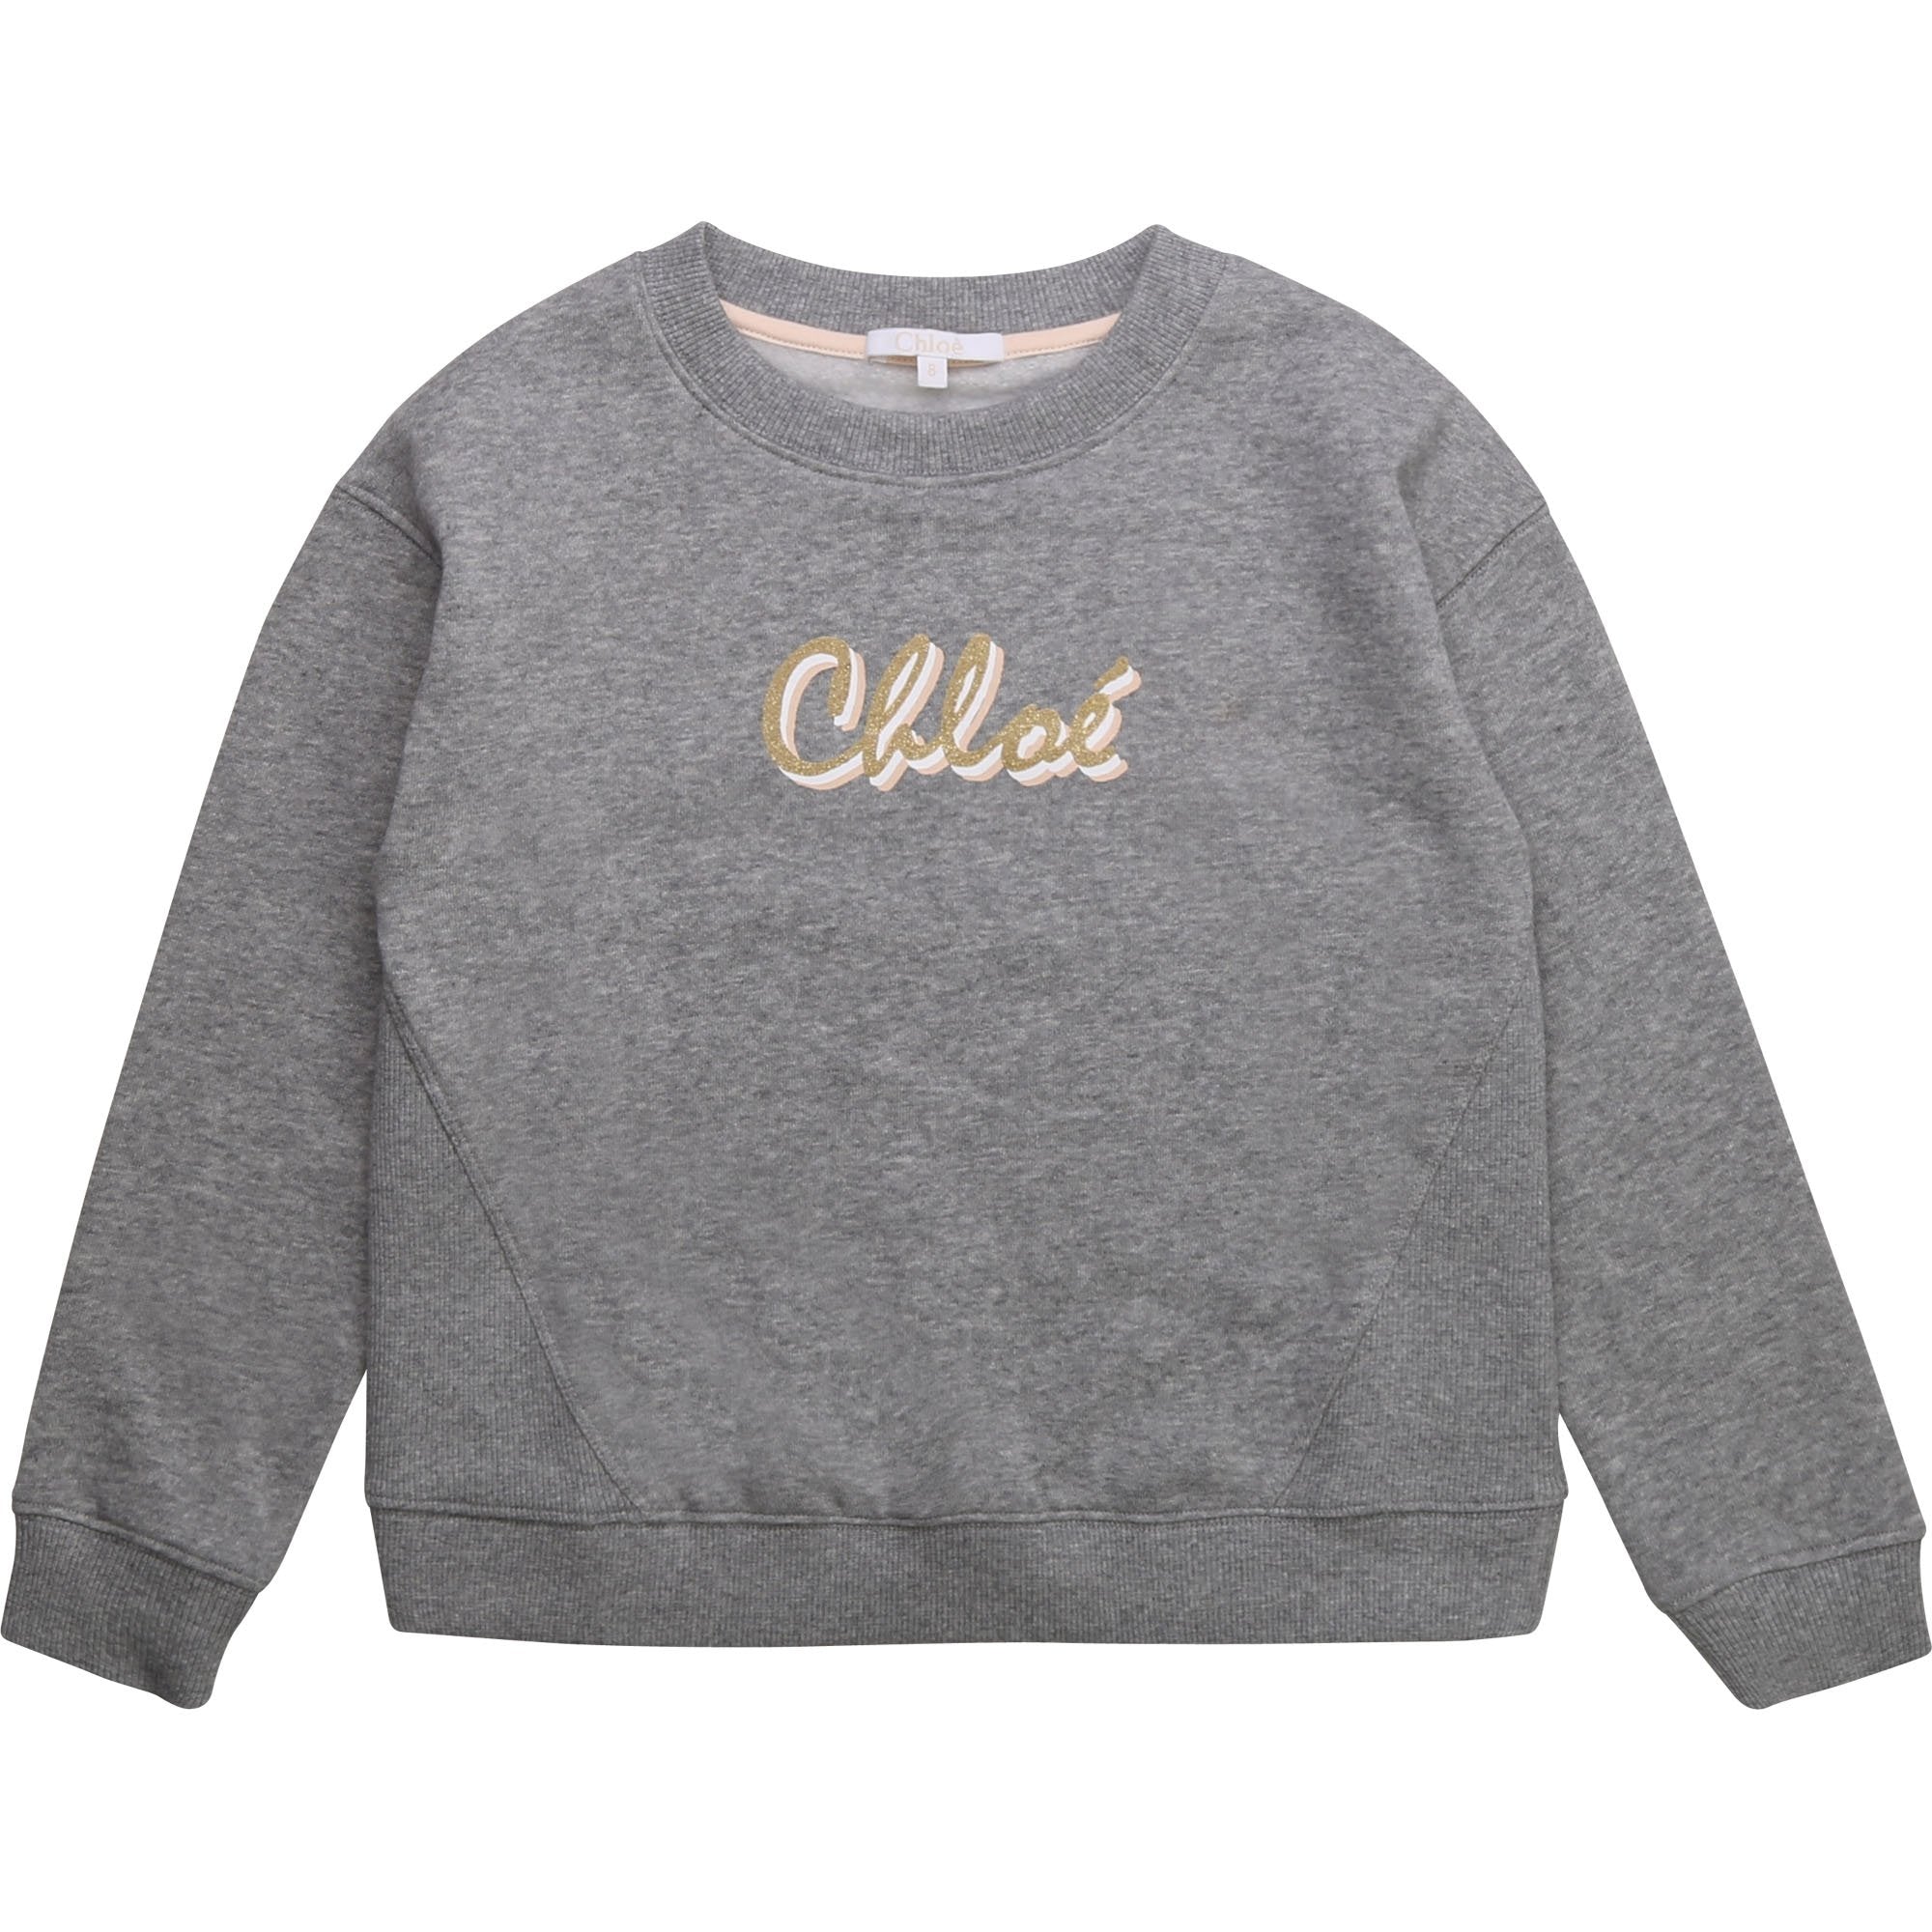 Chloé Girls Grey Logo Sweatshirt - 8Y GREY